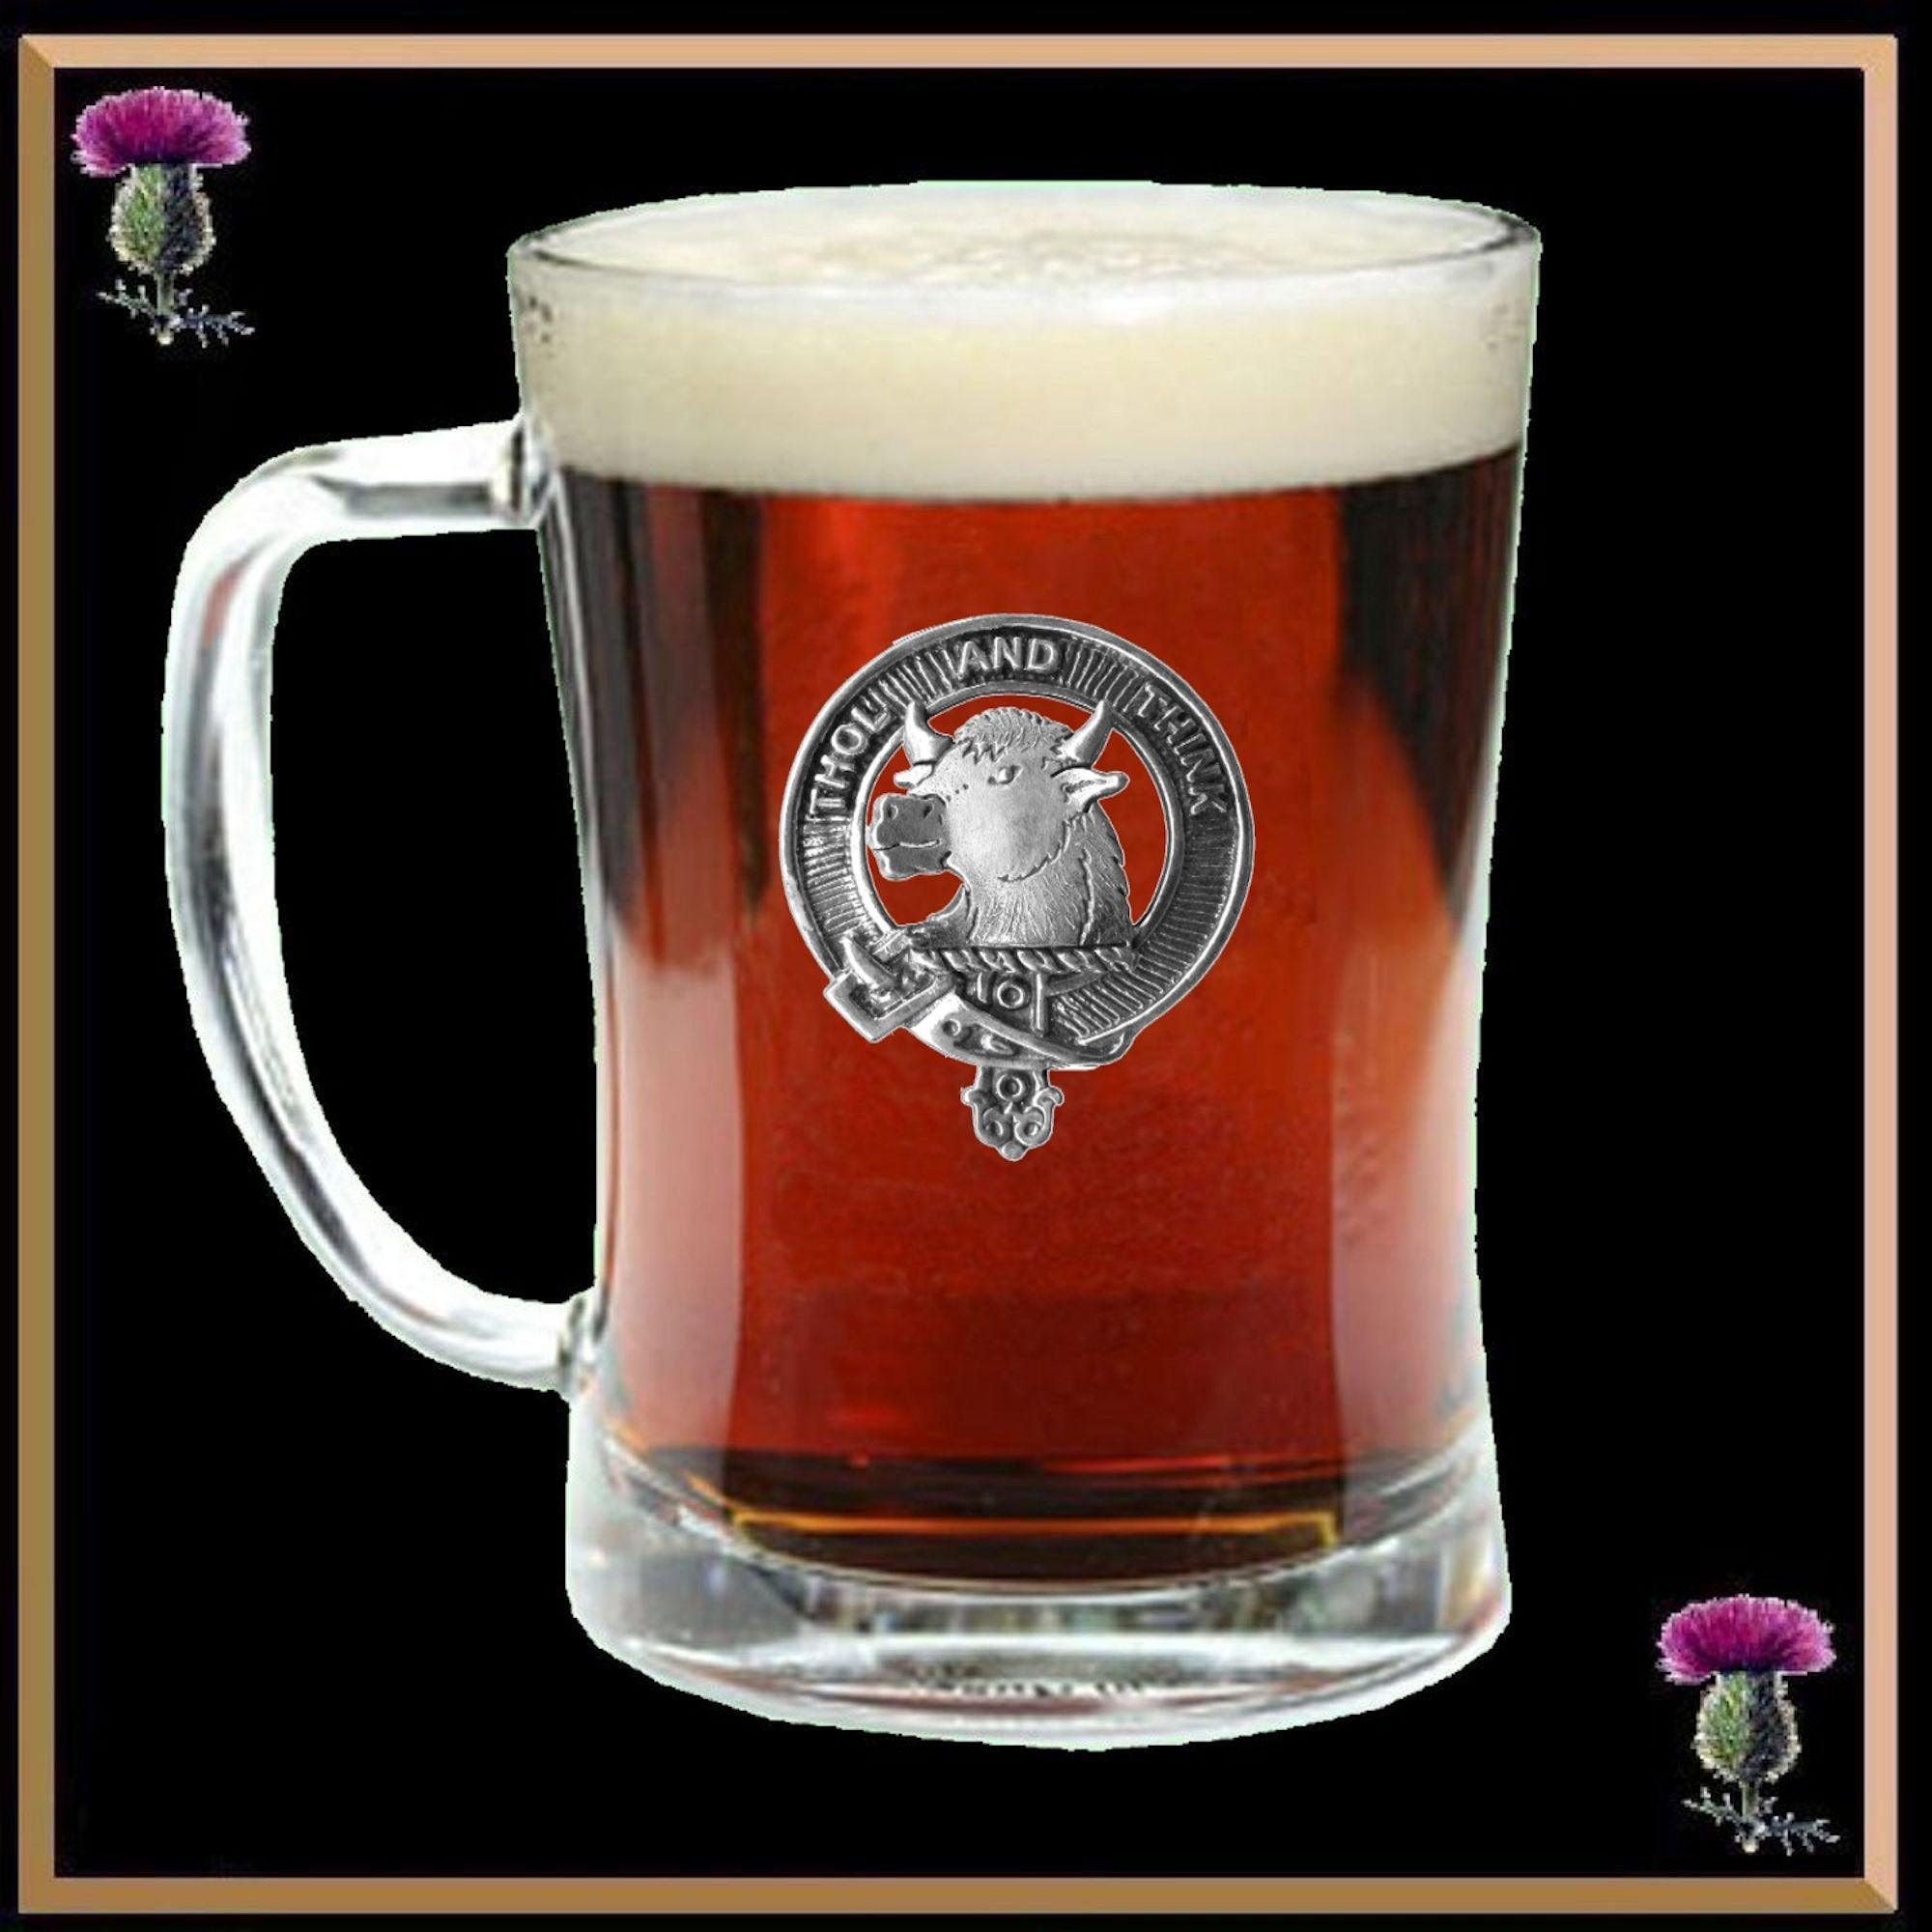 Tweedie Clan Crest Badge Glass Beer Mug